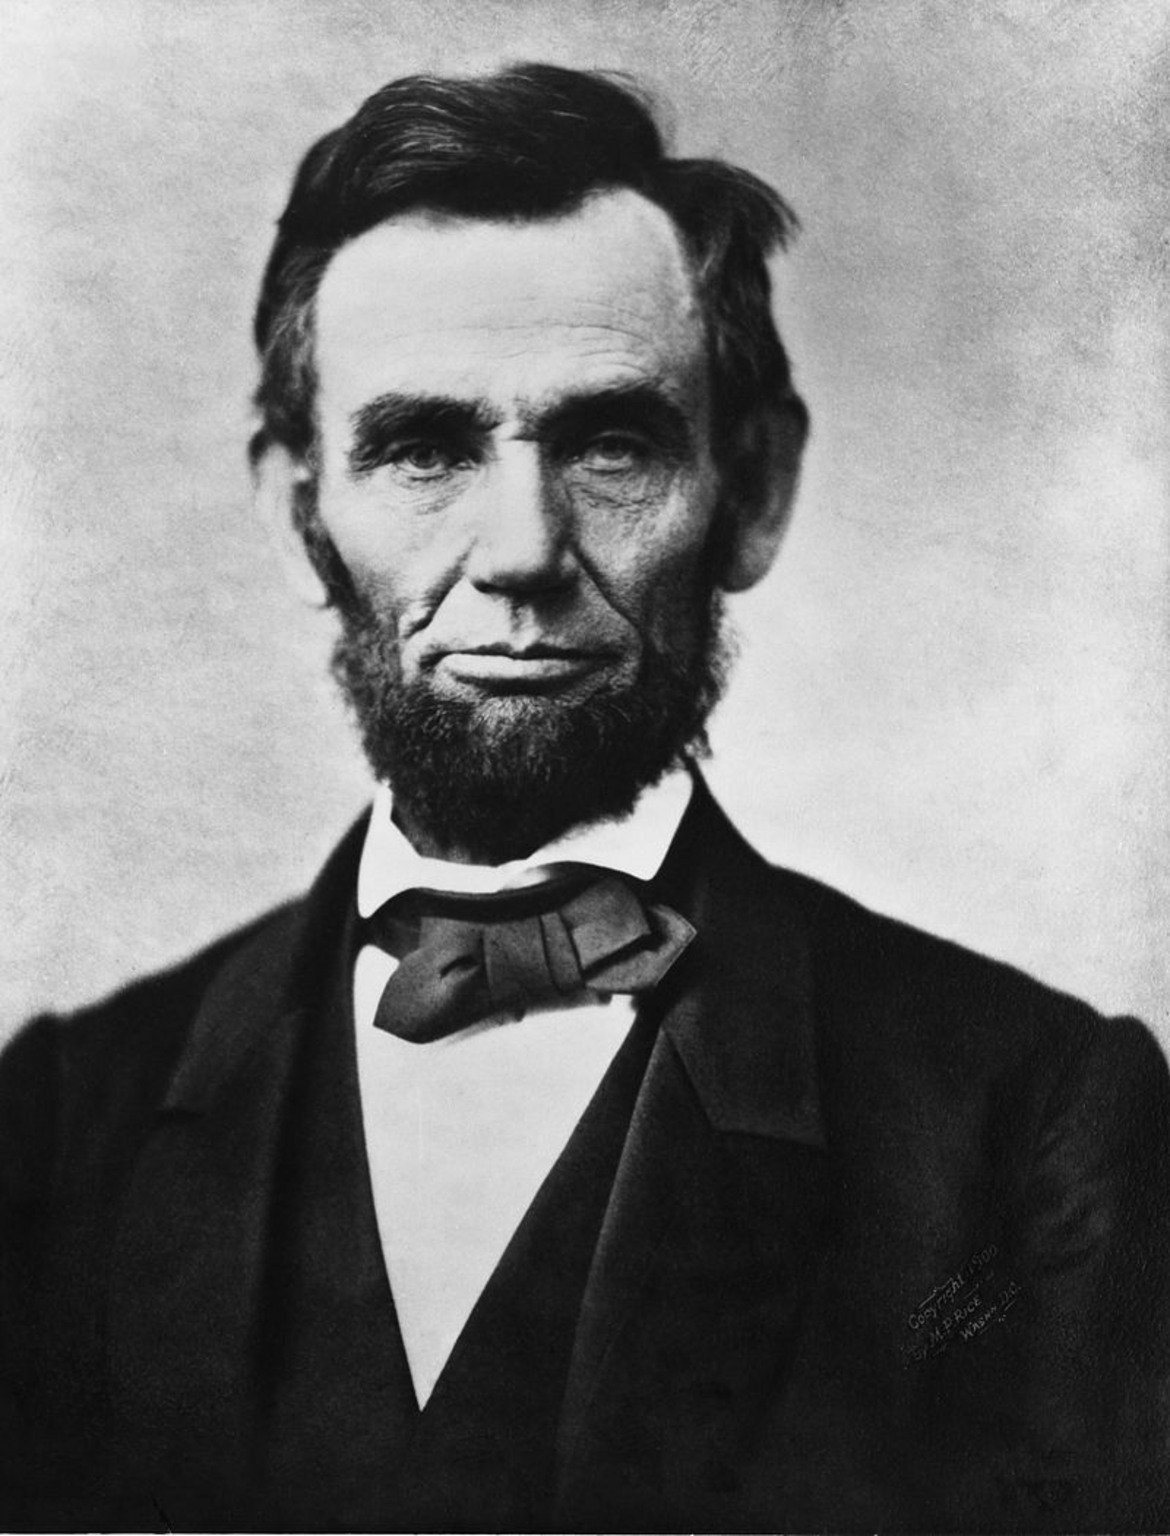 Сънят на Линкълн

Малко преди да бъде убит, американският президент Ейбрахам Линкълн казал на няколко от близките си сътрудници в кабинета и на съпругата си, че е сънувал сън, в който много хора са наобиколили ковчег, а до ковчега стои войник. Всички шушукали, че някой в Белия дом е починал. Когато попитал войника кой е умрелият, той му отговорил кратко и просто - президентът.